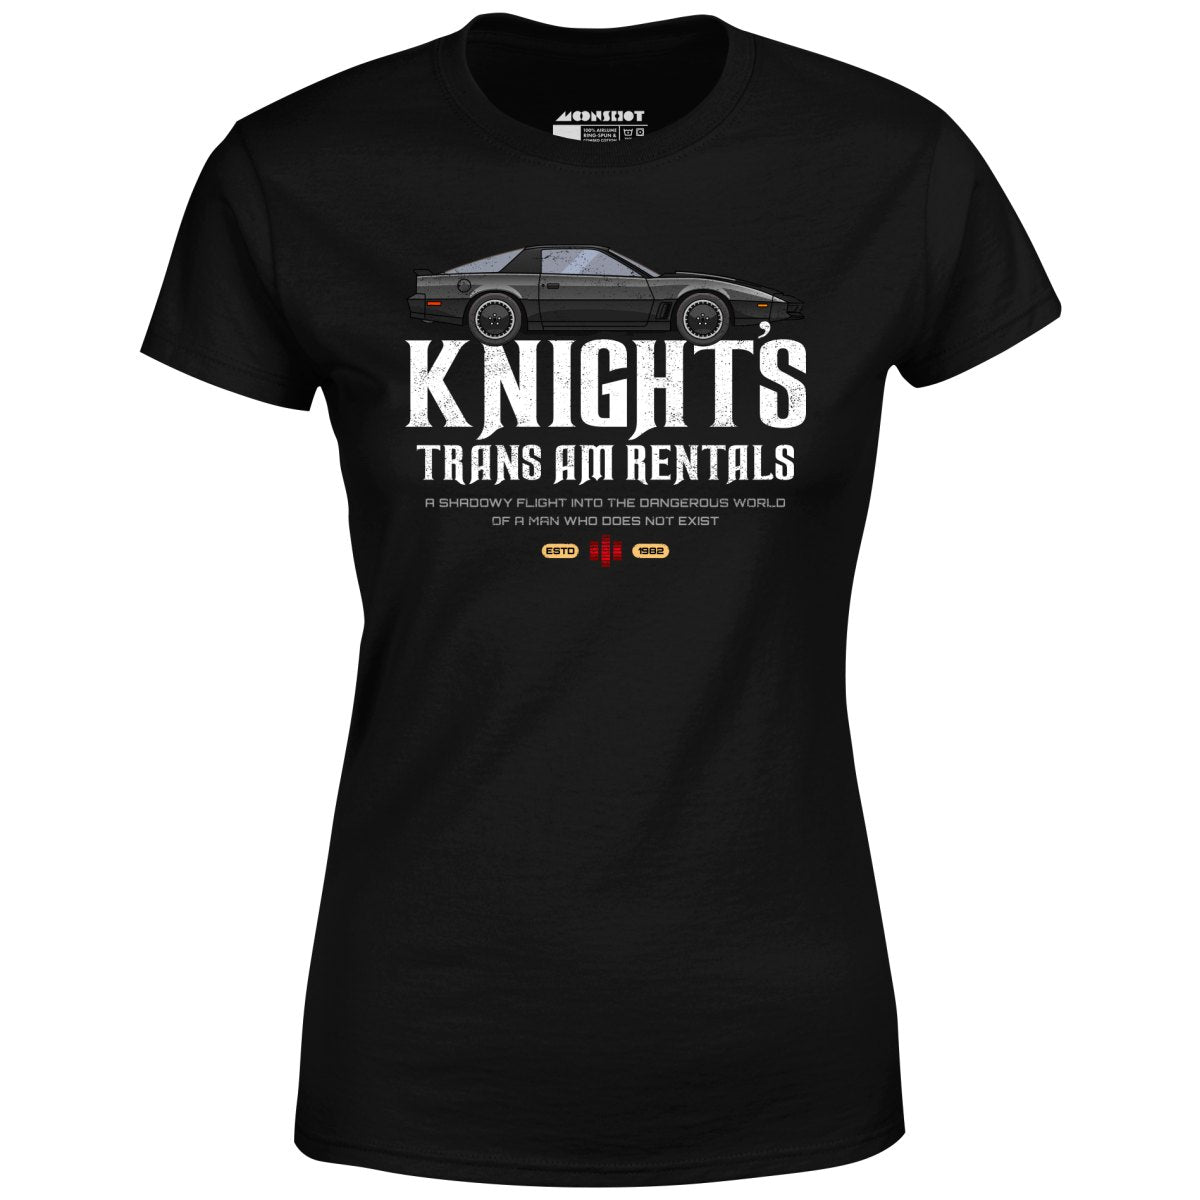 Knight's Trans Am Rentals - Women's T-Shirt